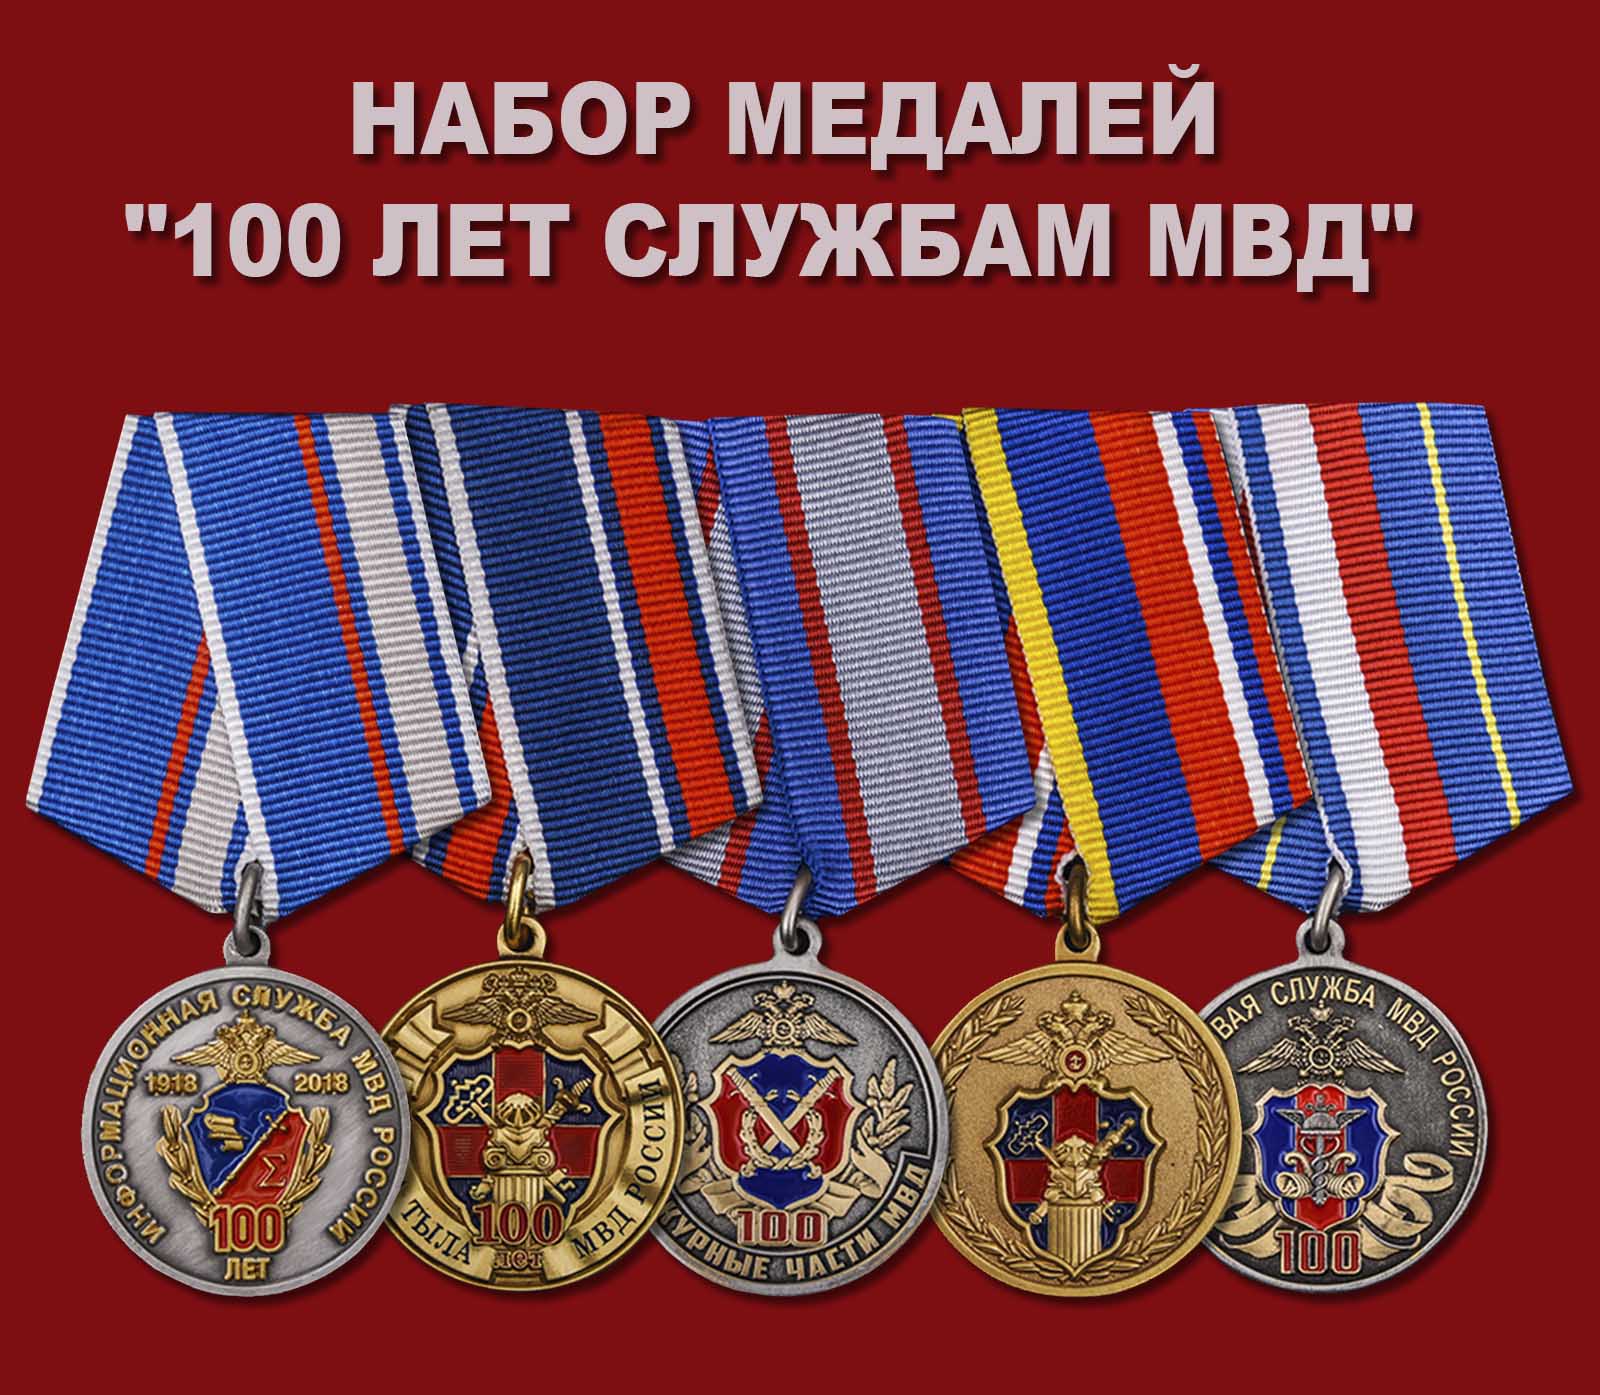 Купить набор медалей "100 лет службам МВД"